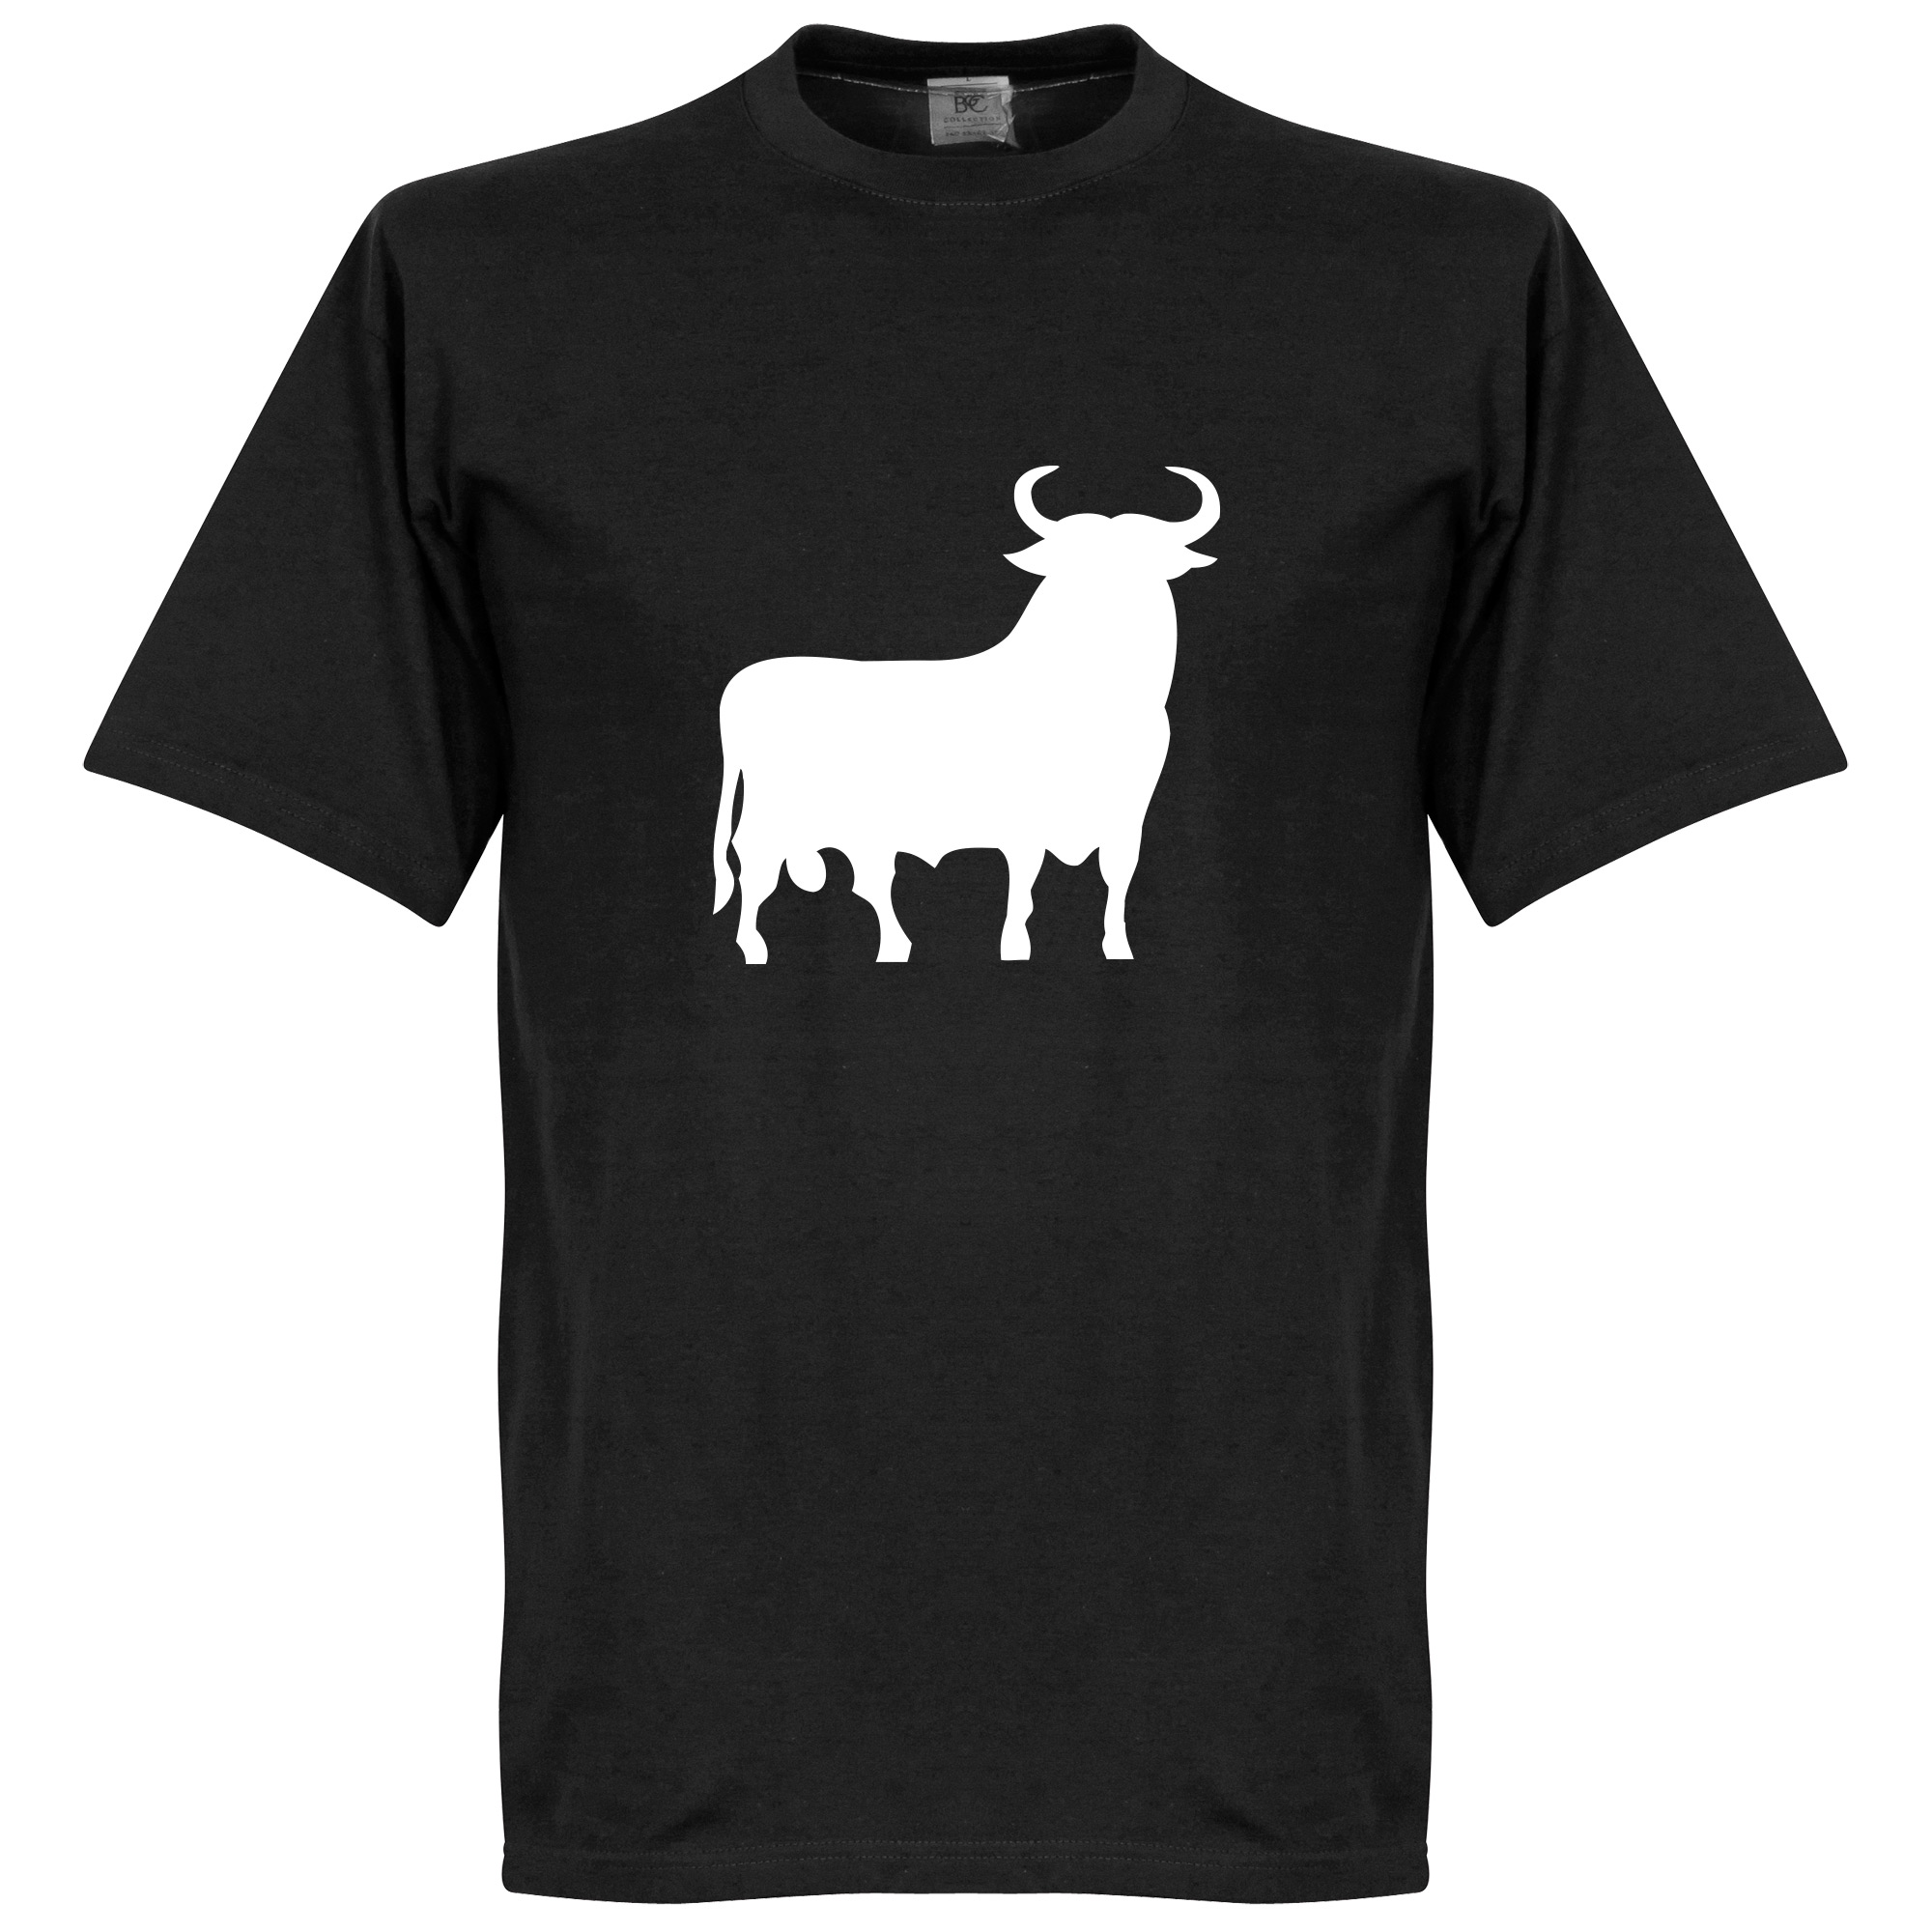 El Toro T-shirt XL